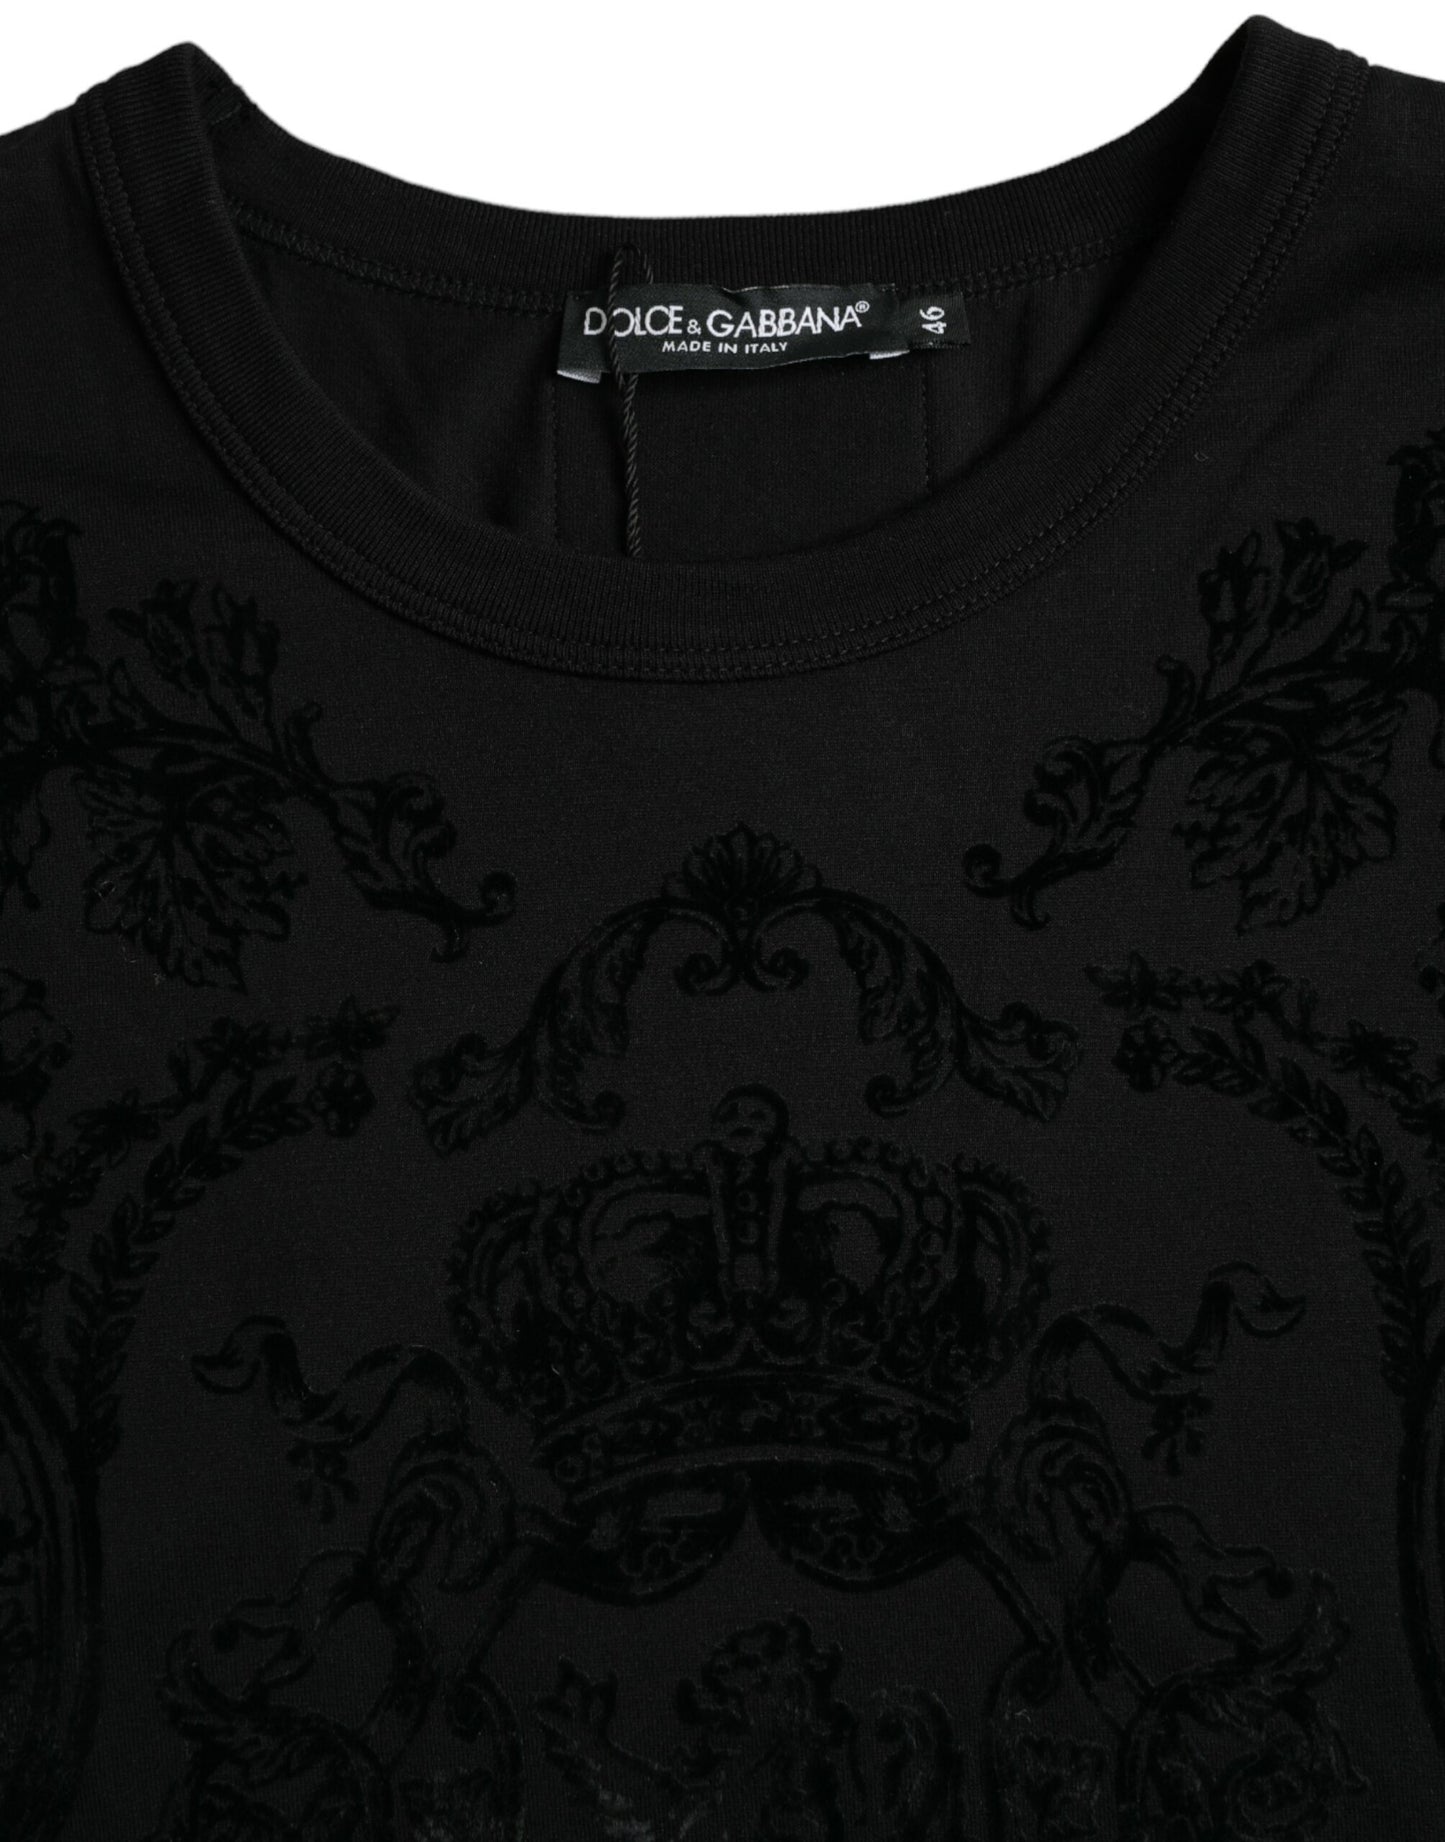 Black Lion Crown Logo Cotton Crewneck T-shirt